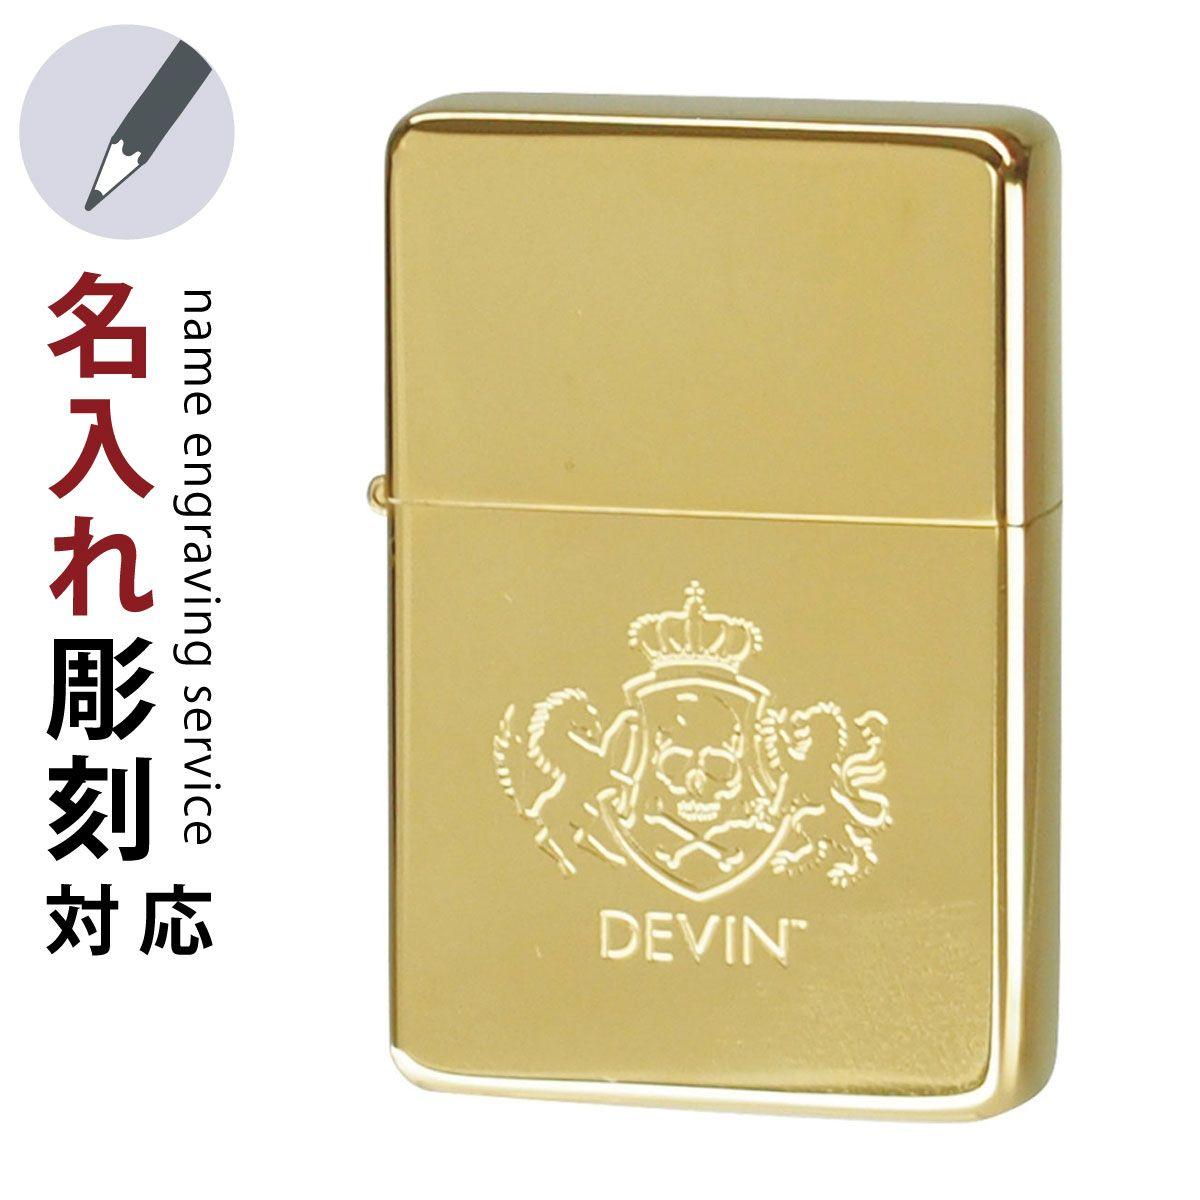 Devin Logo - lighterya: Oil lighter simple DEVIN logo LOGO-G gold gift gift gift ...